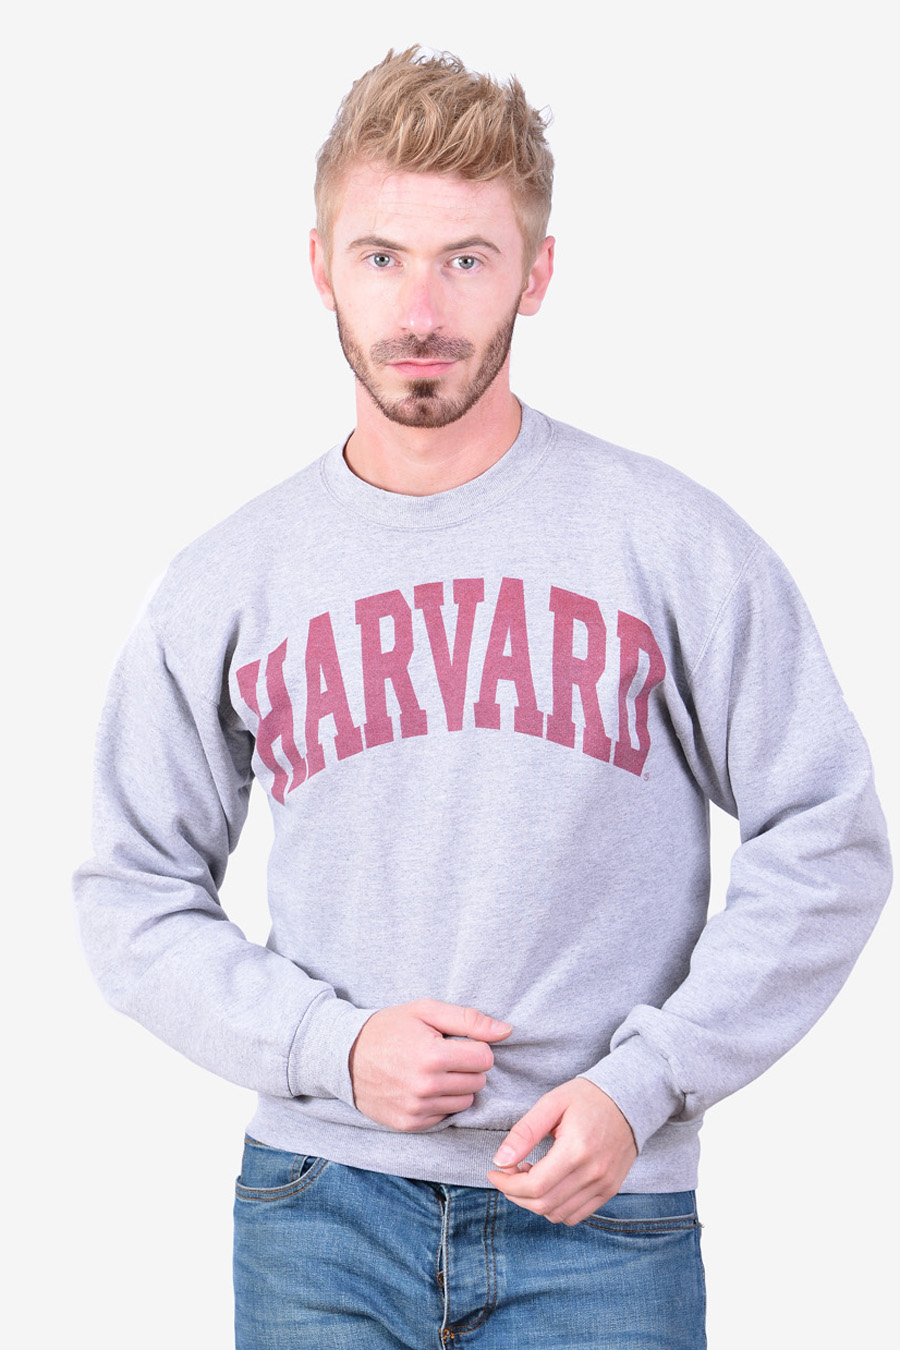 Vintage Harvard sweatshirt